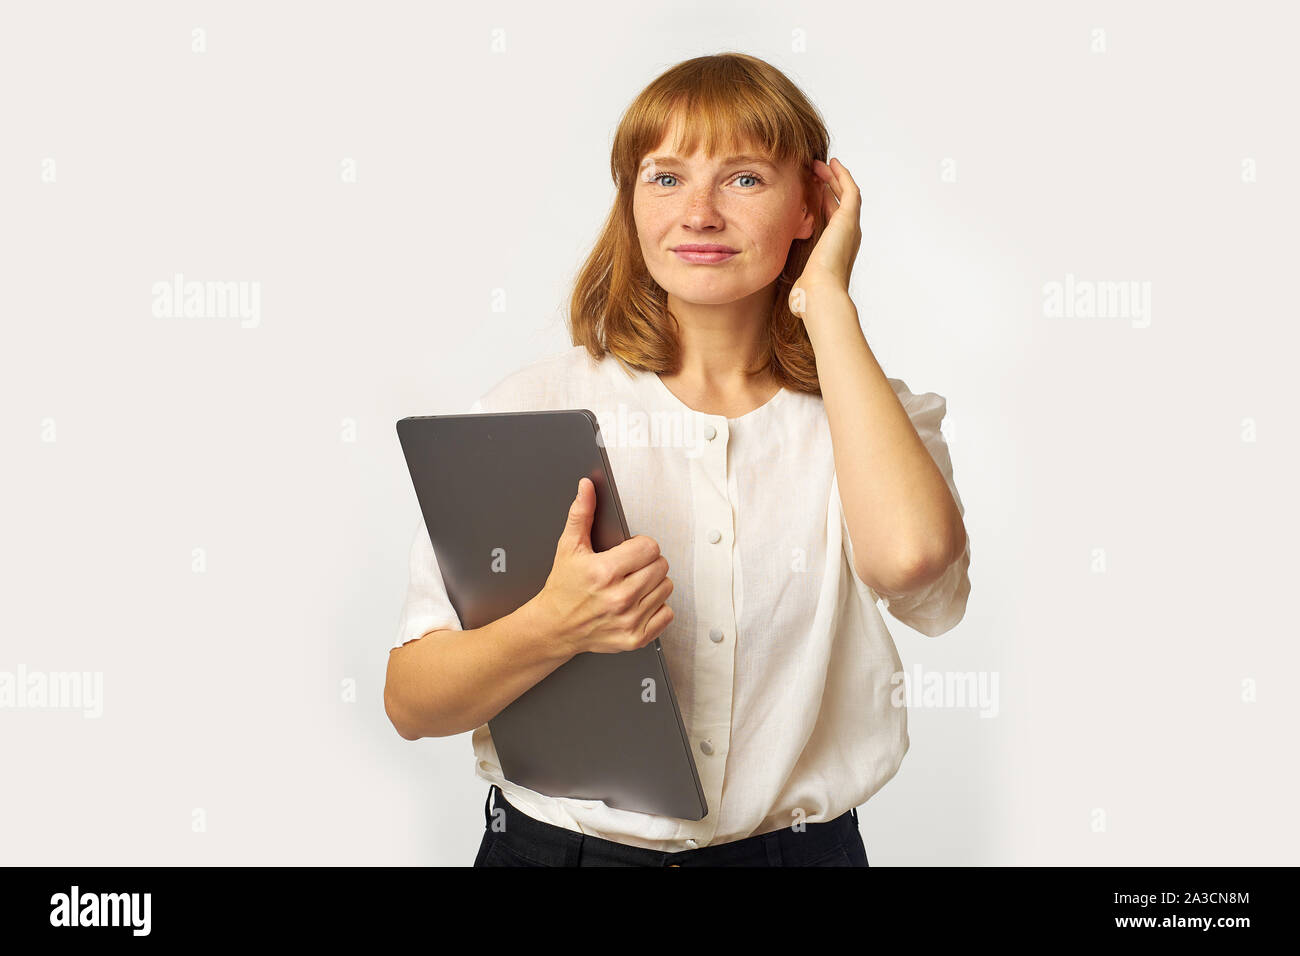 Portrait de jeune femme aux cheveux rouges et de rousseur holding laptop et à directement à l'appareil photo avec un sourire amical Banque D'Images